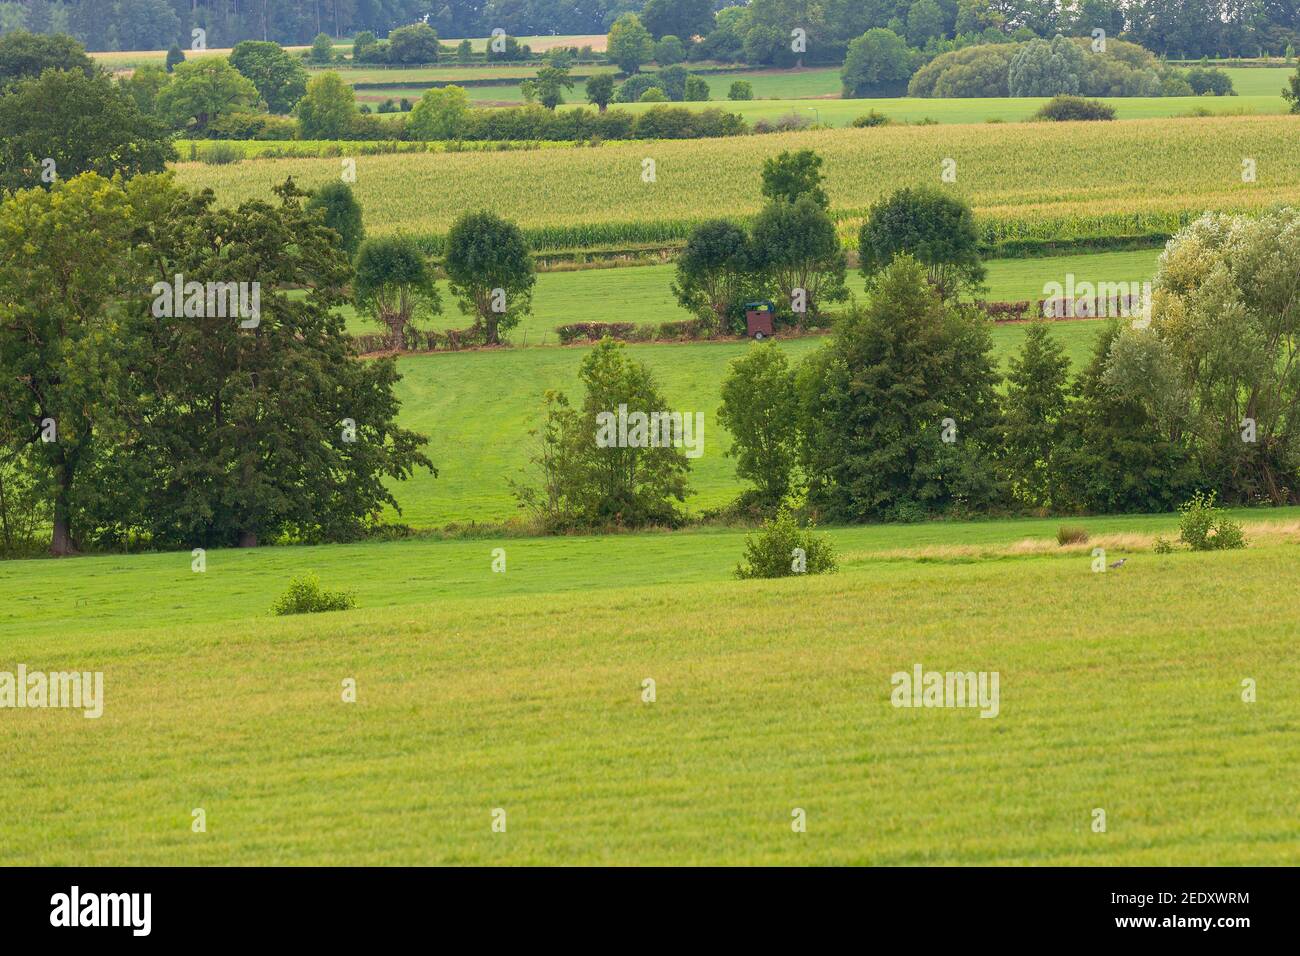 Best of Limburg Landschaft, schöne grüne Landschaft, Hügel, Felder und Wiese, Vegetation und Dorf Stockfoto